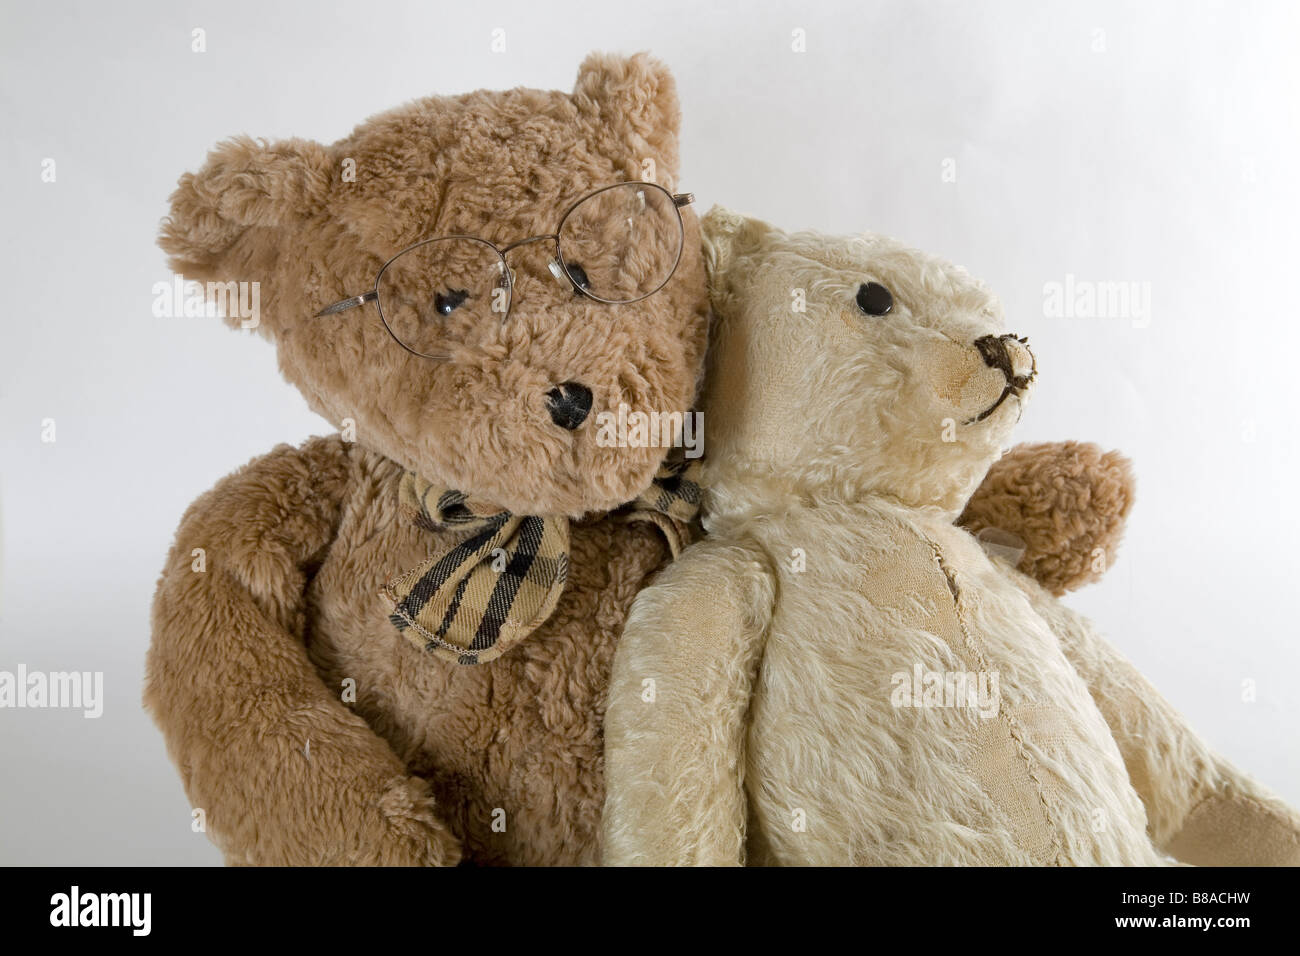 Zwei alte Teddybären get together für alten Zeiten Willen und zu reden,  ihre Risse und Tränen Stockfotografie - Alamy